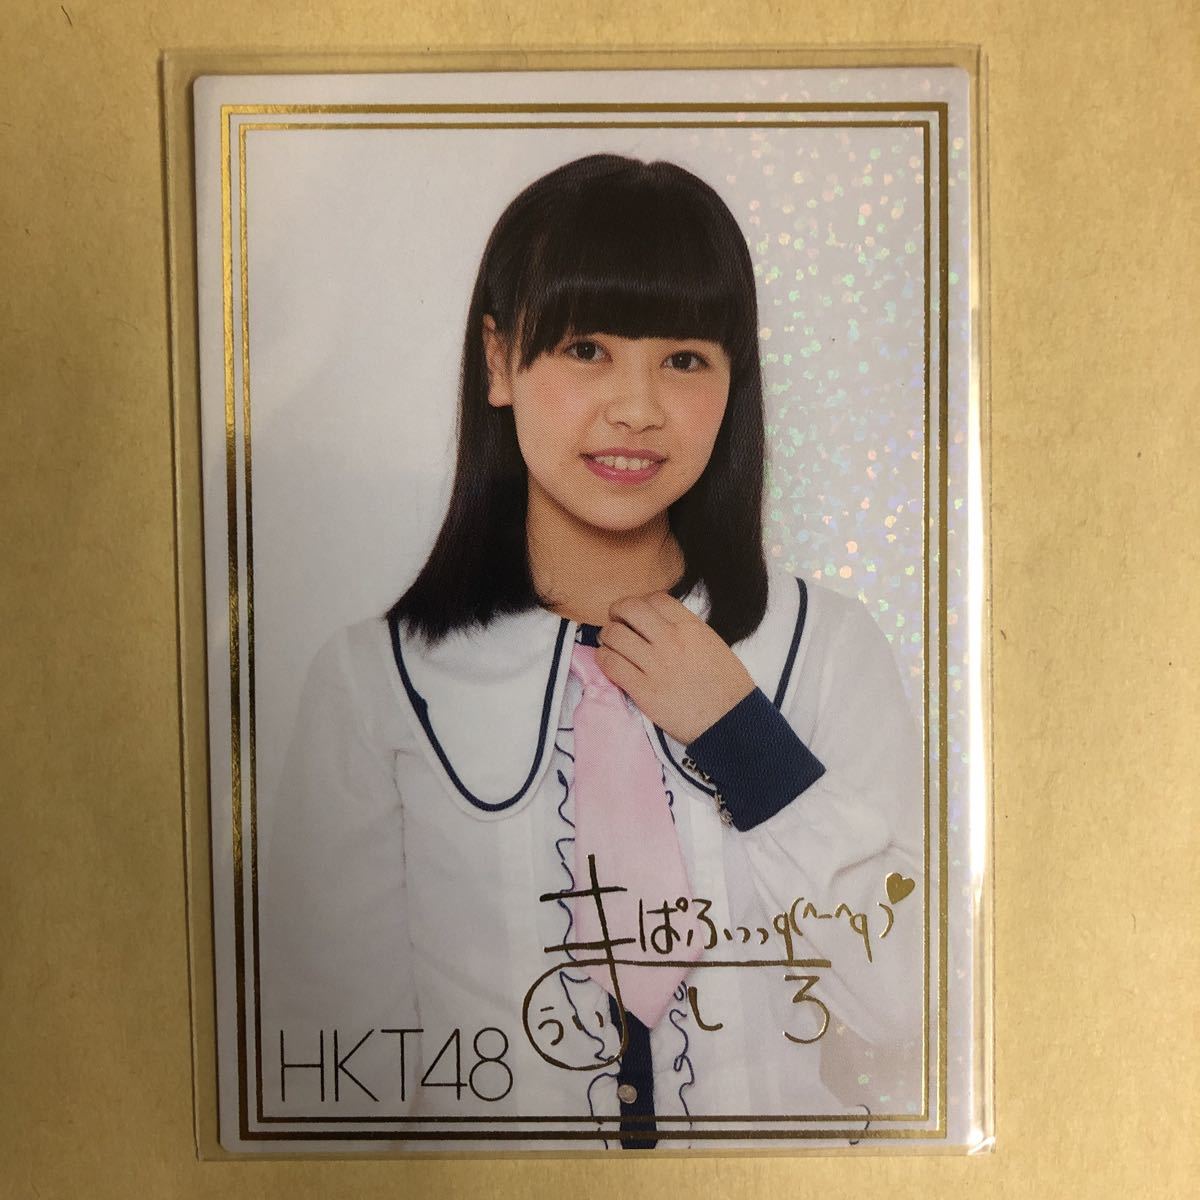 HKT48 宇井真白 2013トレカ アイドル グラビア カード R088H タレント トレーディングカード 金箔押し 印刷サインの画像1